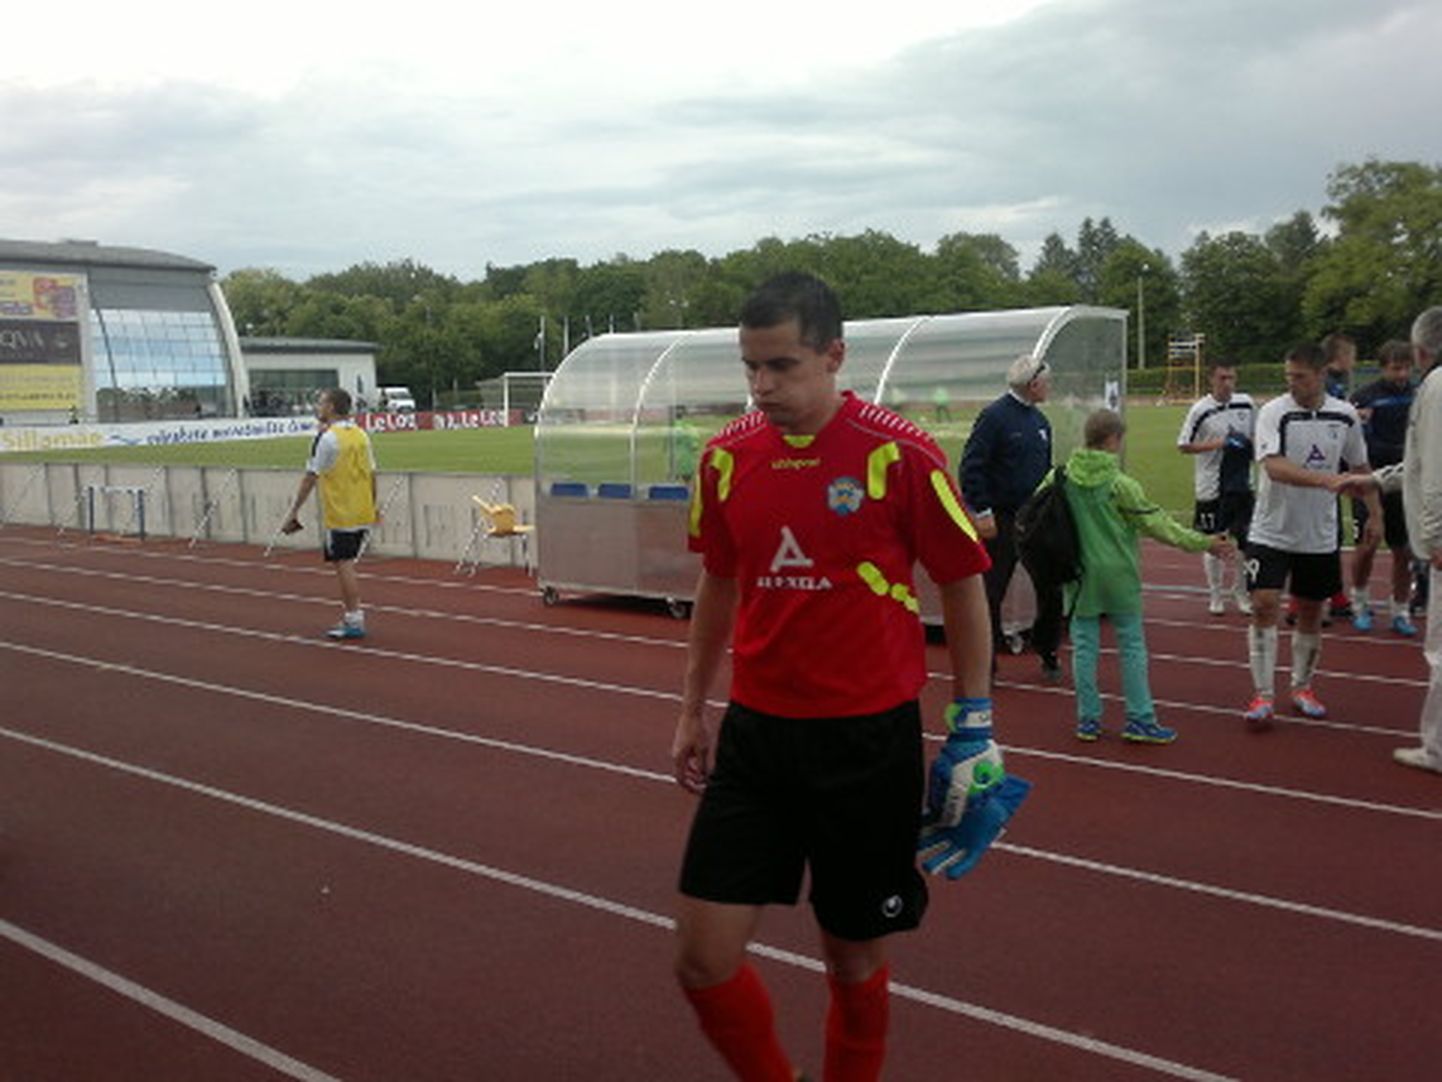 Reedel Lilleküla staadionil toimunud kohtumise kangelaseks sai Sillamäe meeskonna kapten ja väravavaht Mihhail Starodubtsev, kes päästis oma meeskonna, tõrjudes 9 minutit enne normaalaja lõppu penalti.